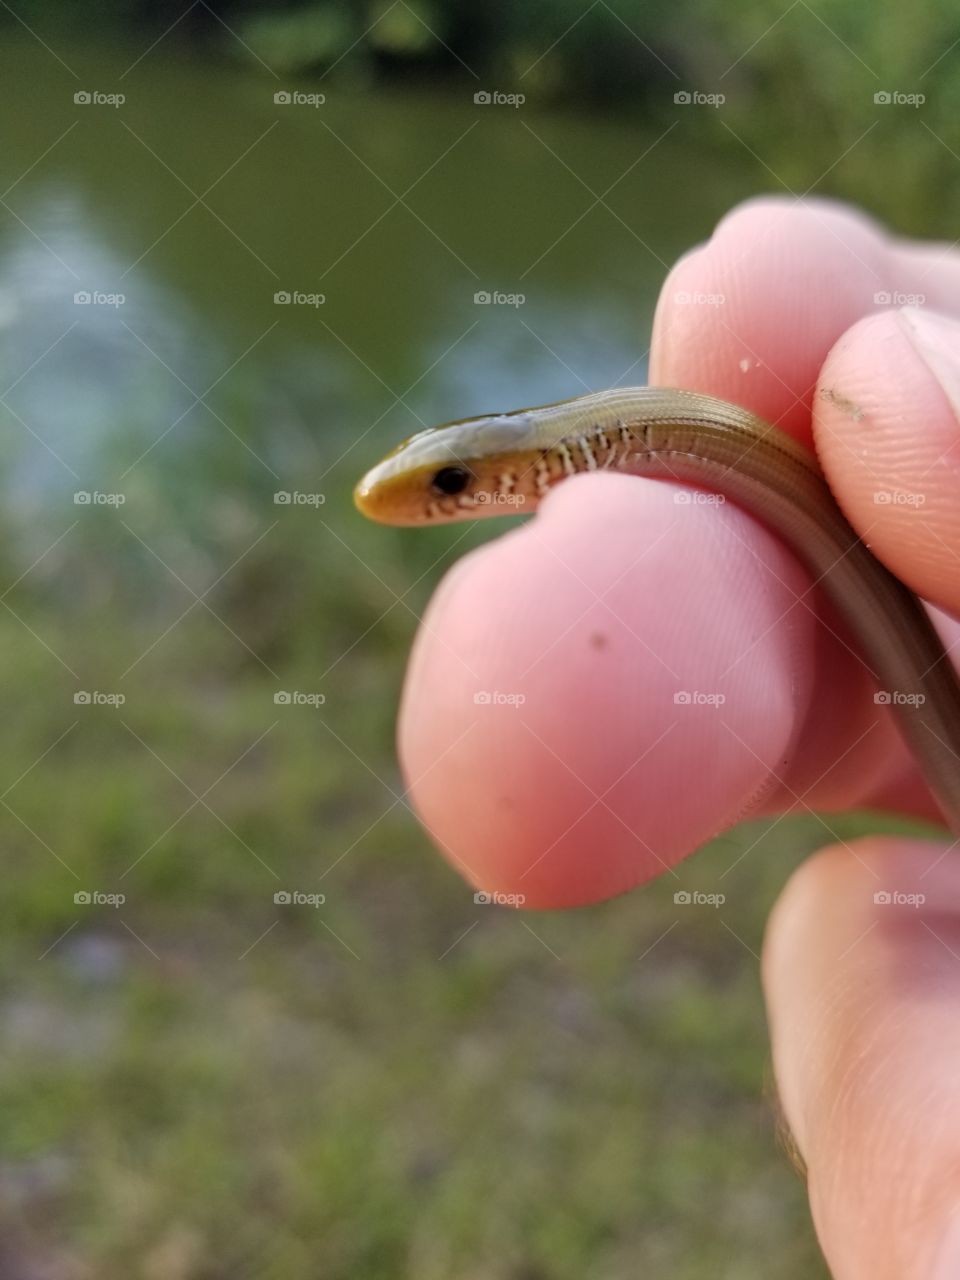 tiny snake